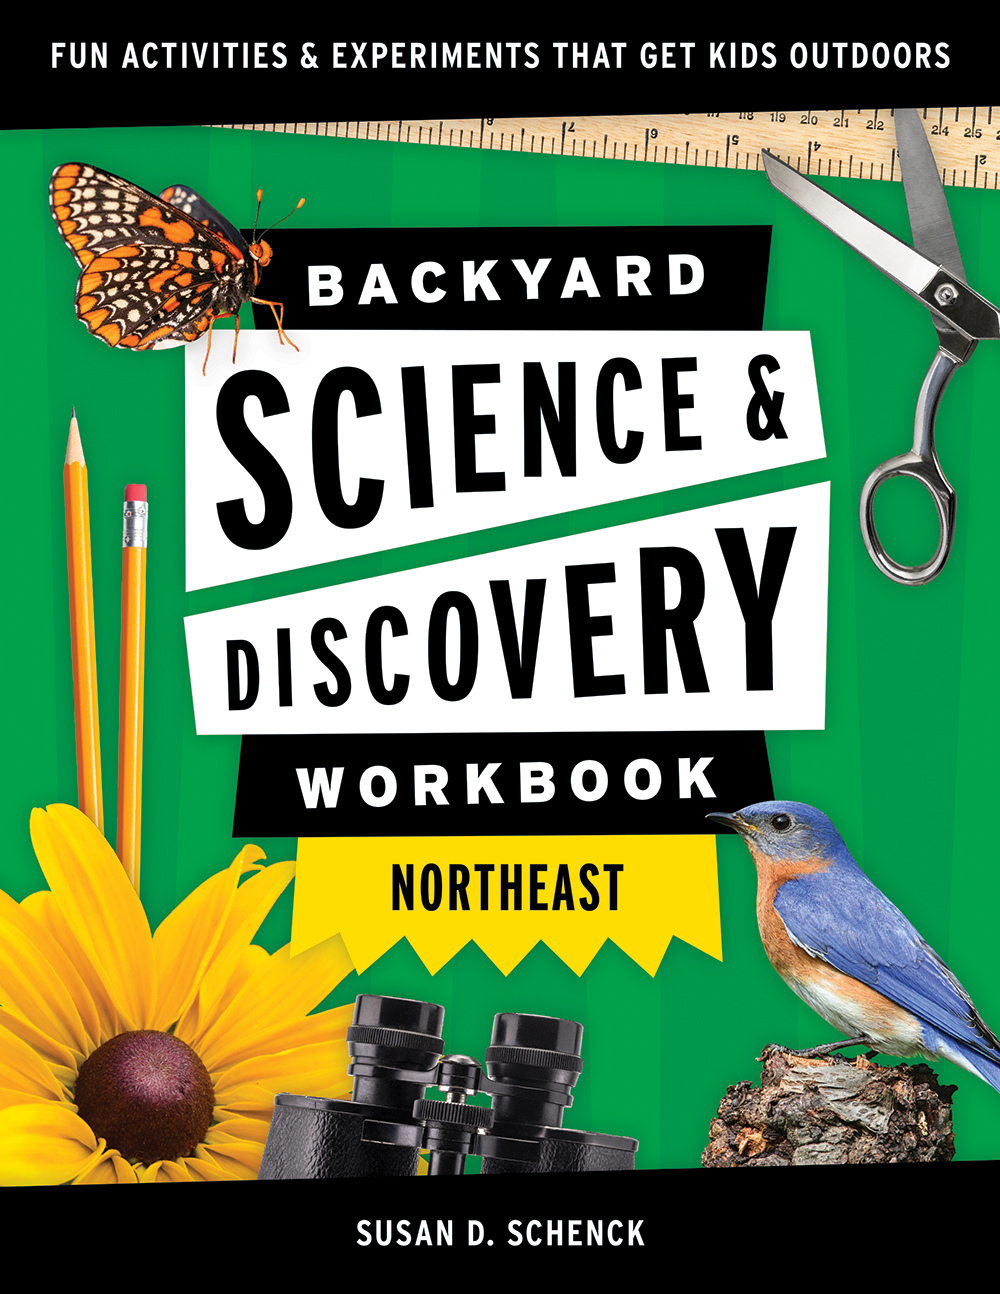 Backyard Science & Discovery Workbook: Northeast - AdventureKEEN Shop